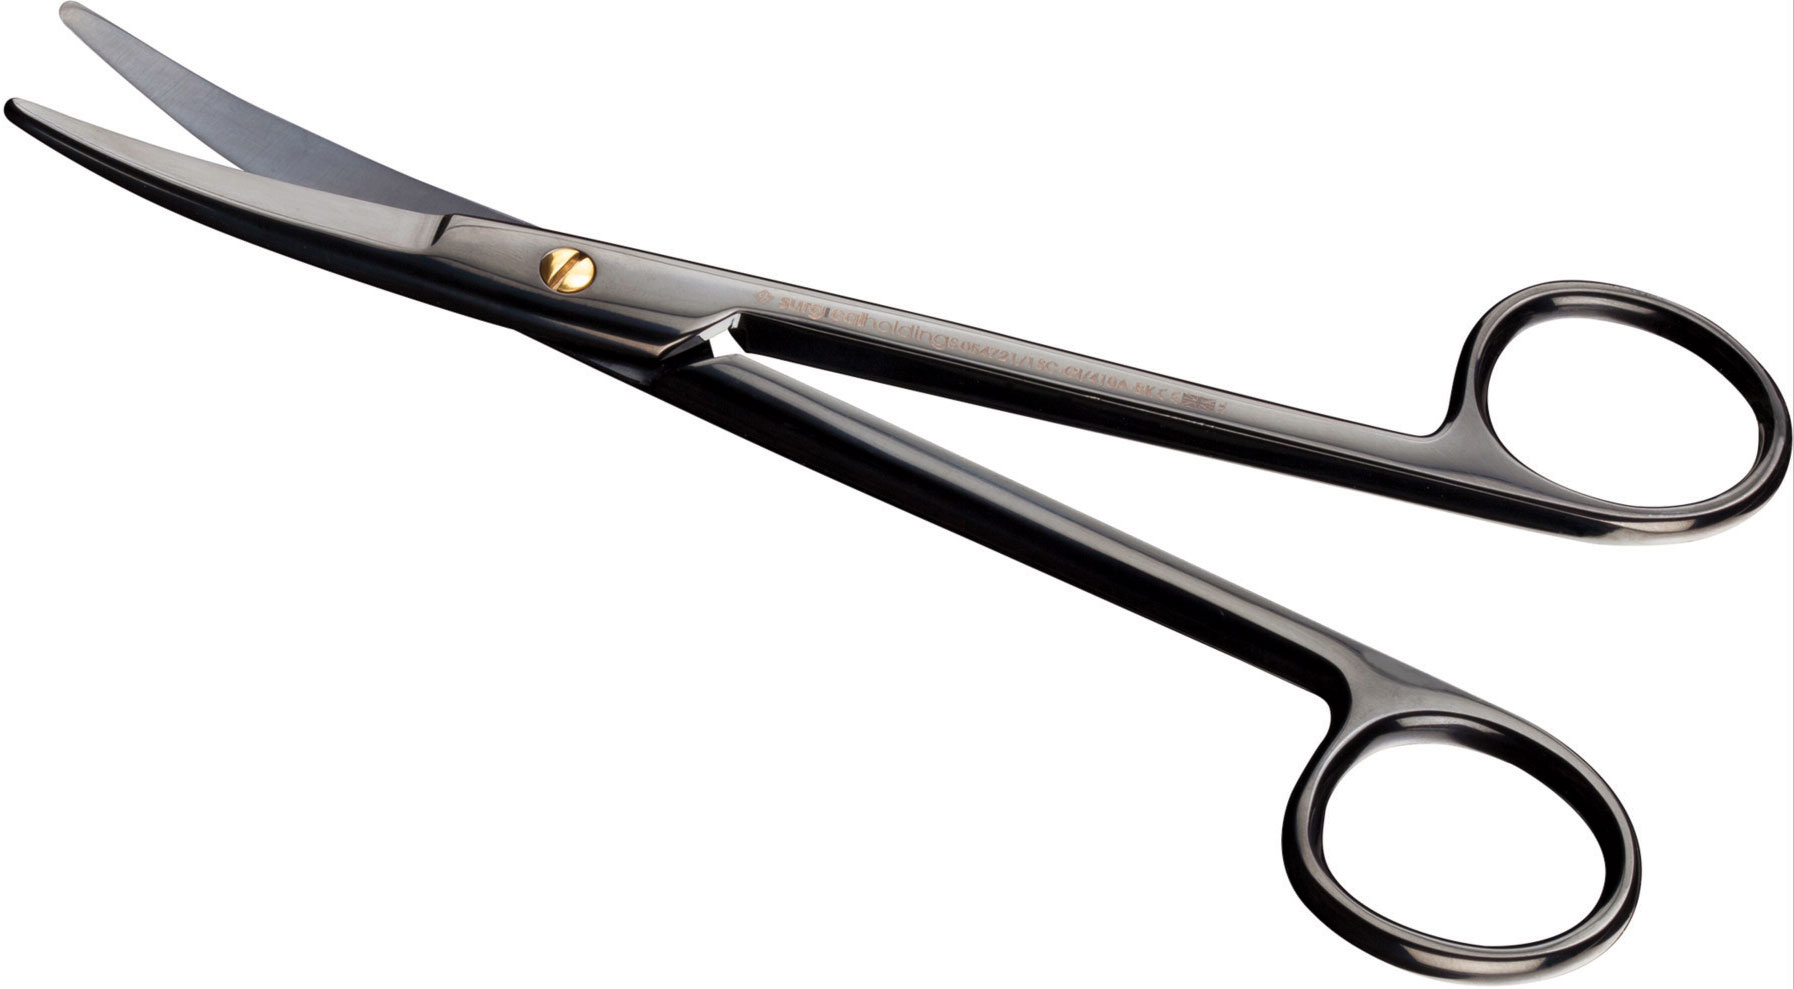 NERO Smooth Cut Surgical Scissors